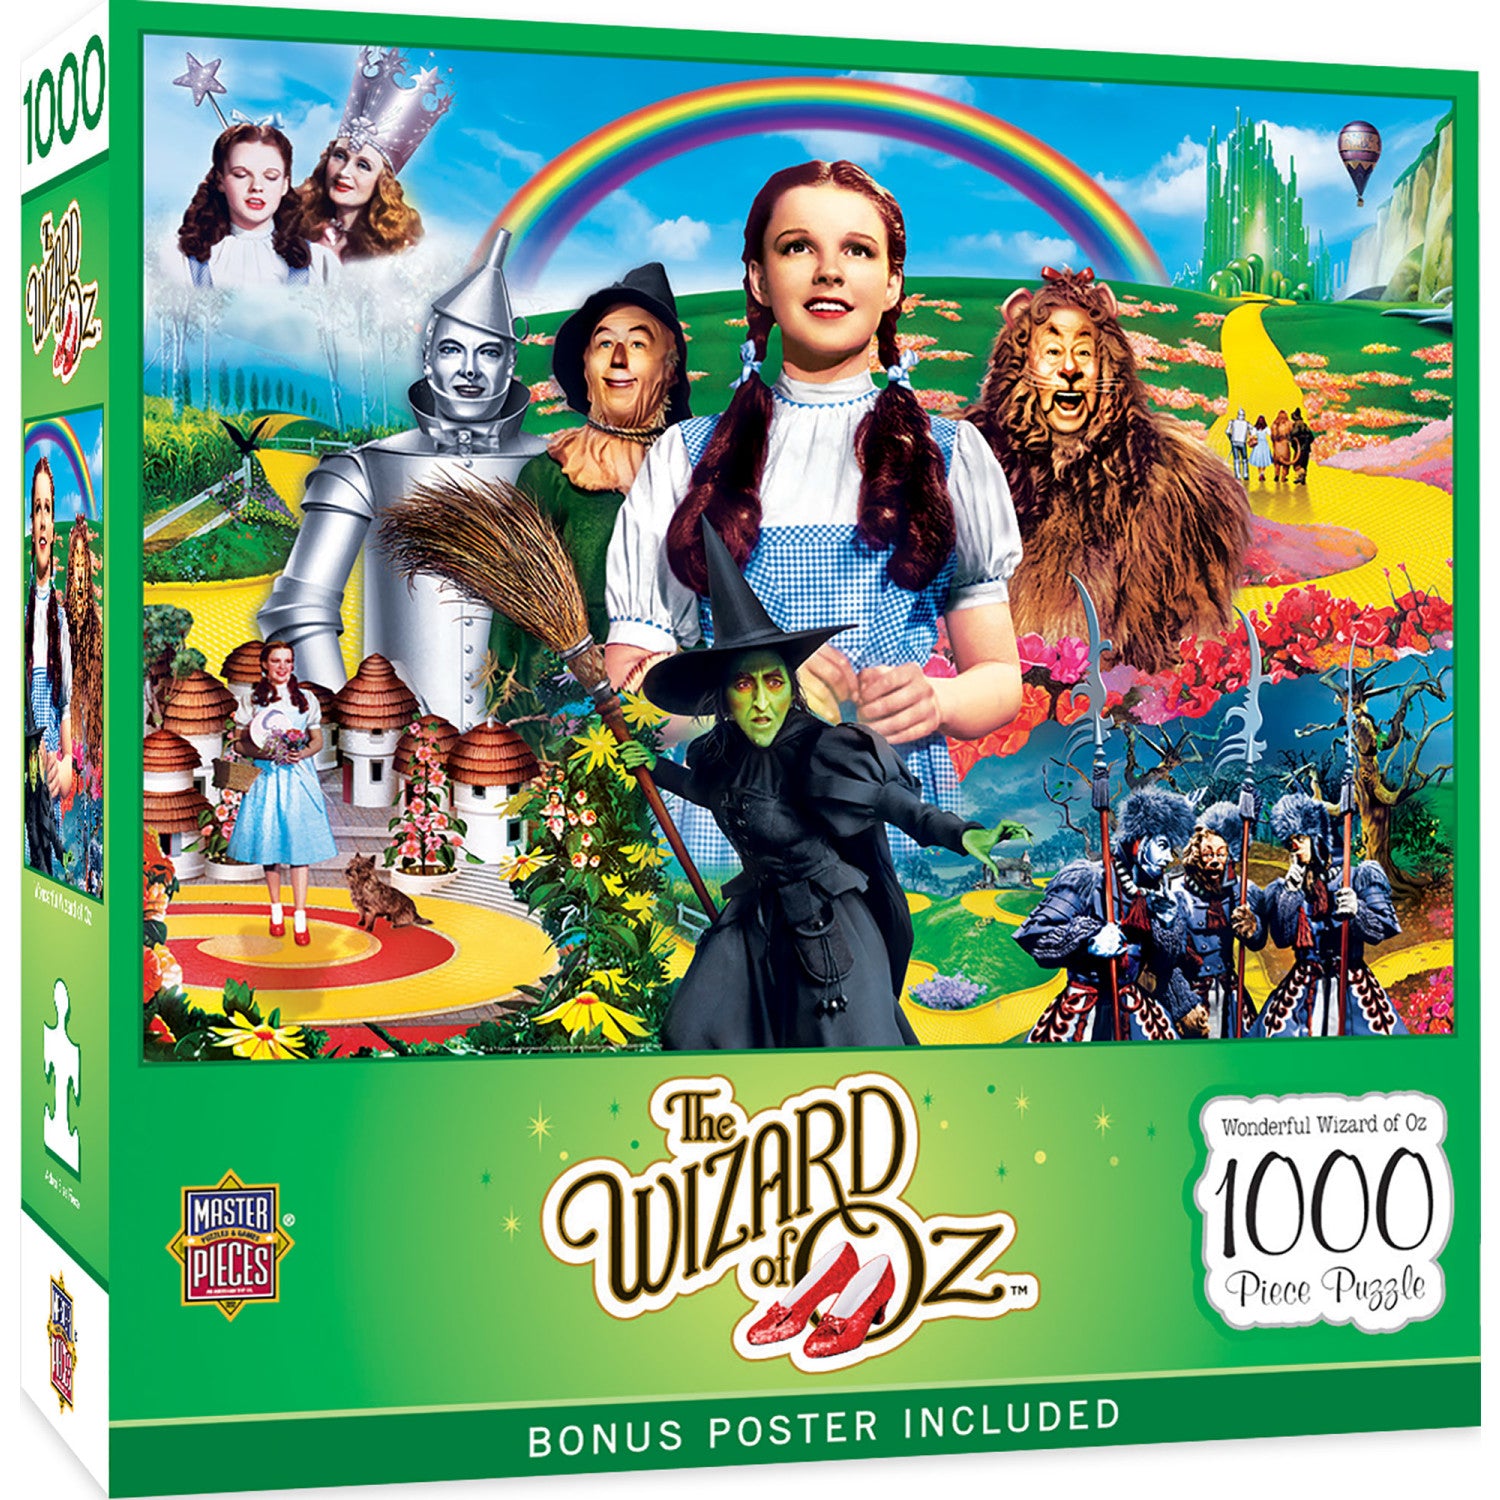 Wonderful Wizard of Oz 1000 Piece Jigsaw Puzzle